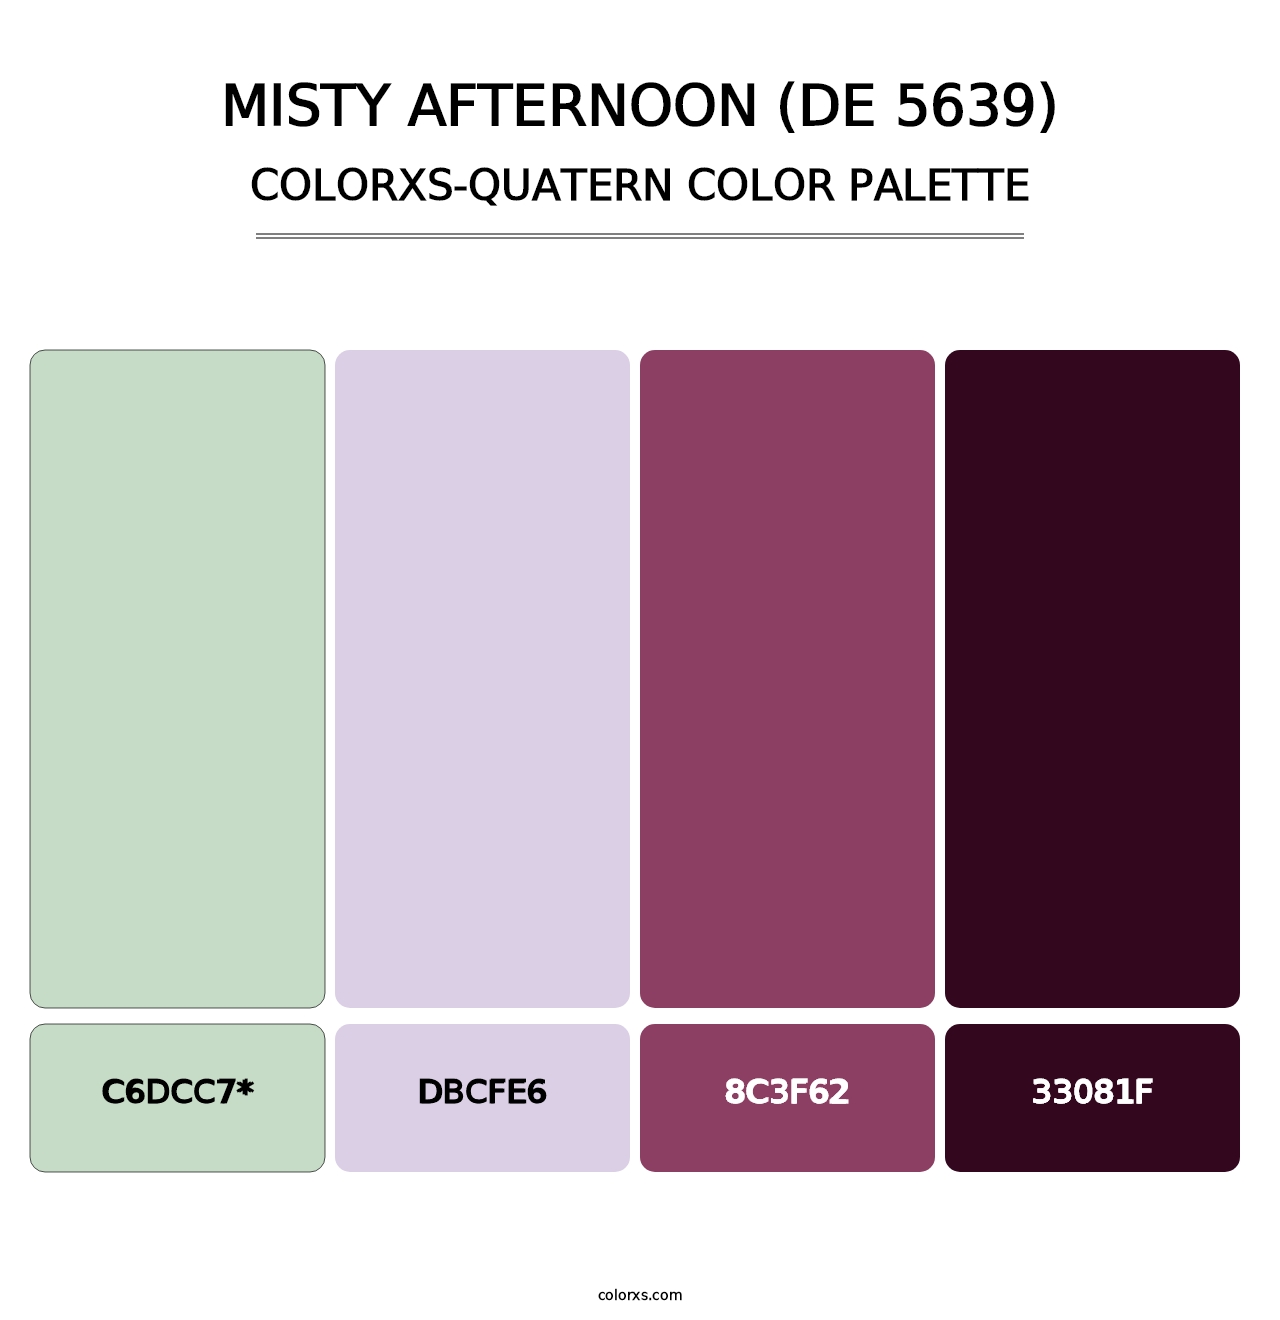 Misty Afternoon (DE 5639) - Colorxs Quatern Palette